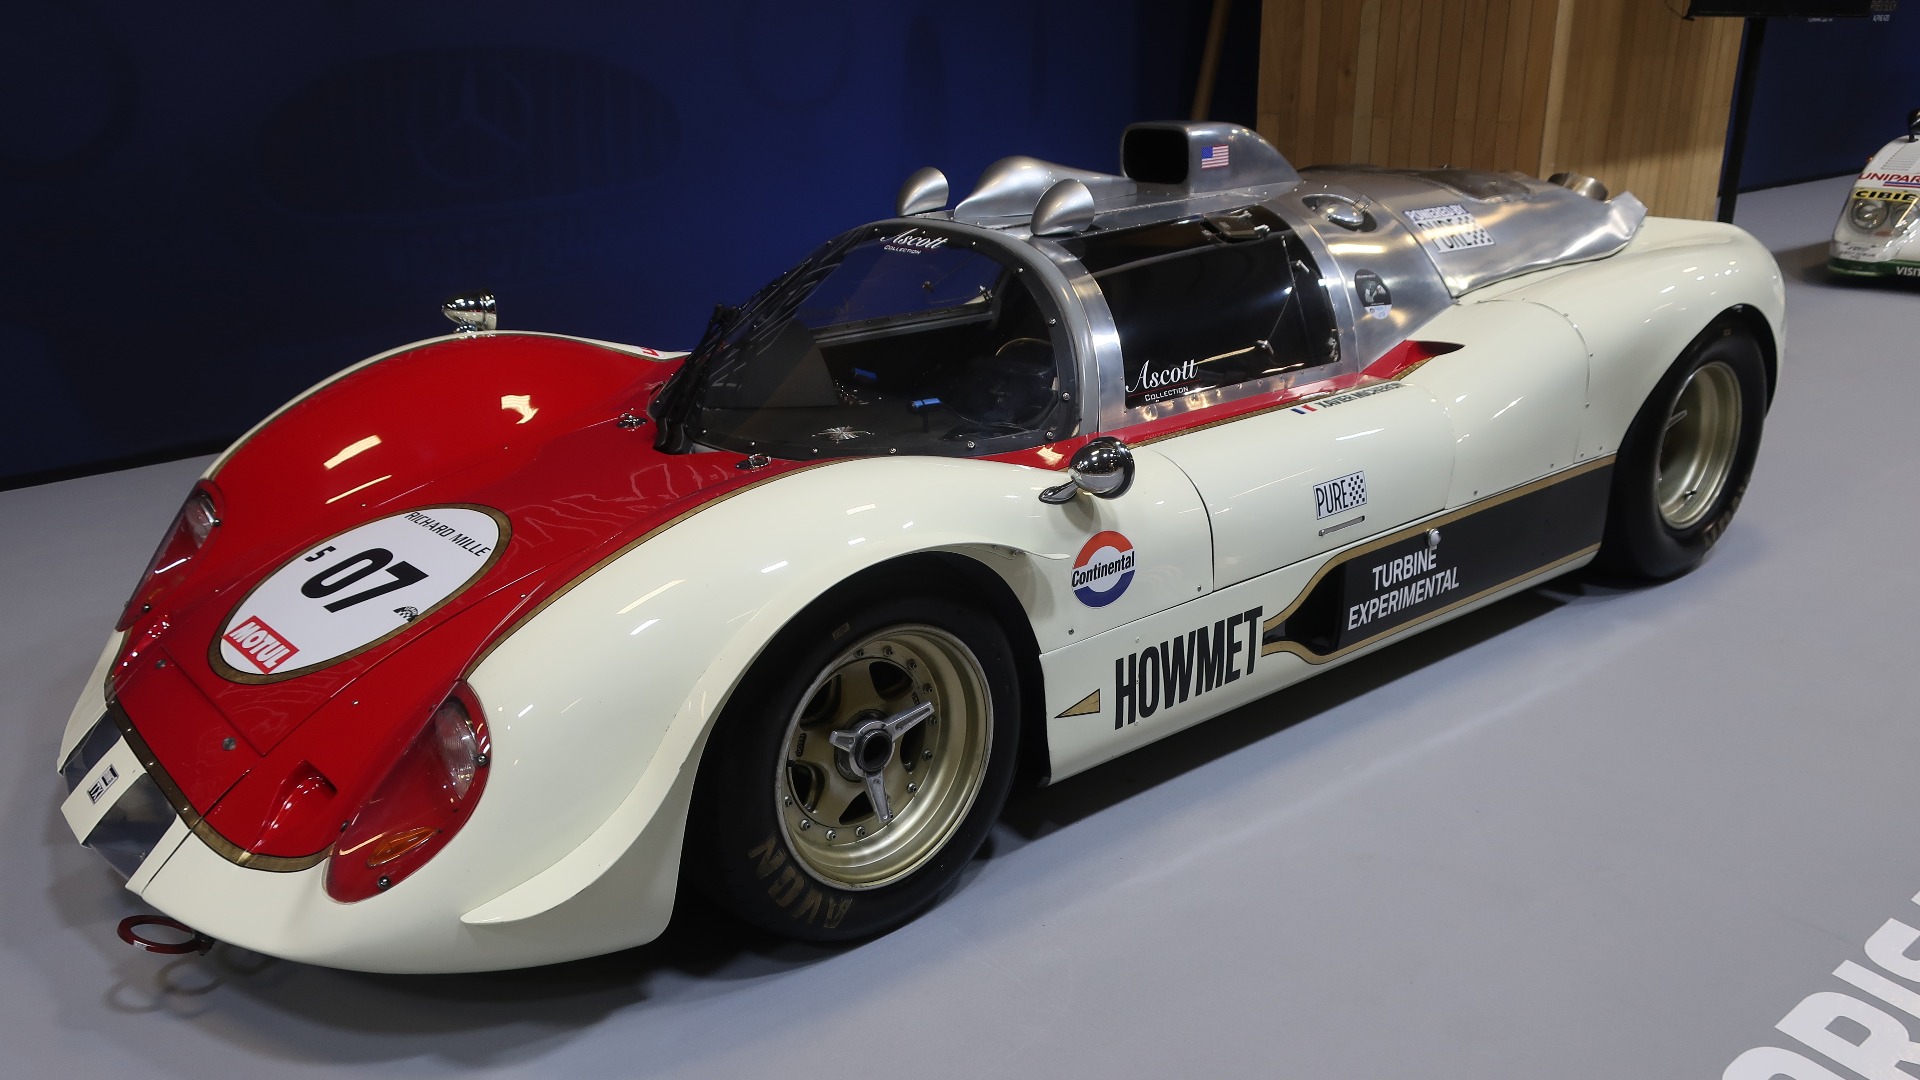 24-timers løpet på Le Mans feirer 100-års jubileum i 2023, og det ble selvsagt behørig feiret. Her en 1968 Howmet TX med gassturbin-motor som deltok i løpet i 1968. 